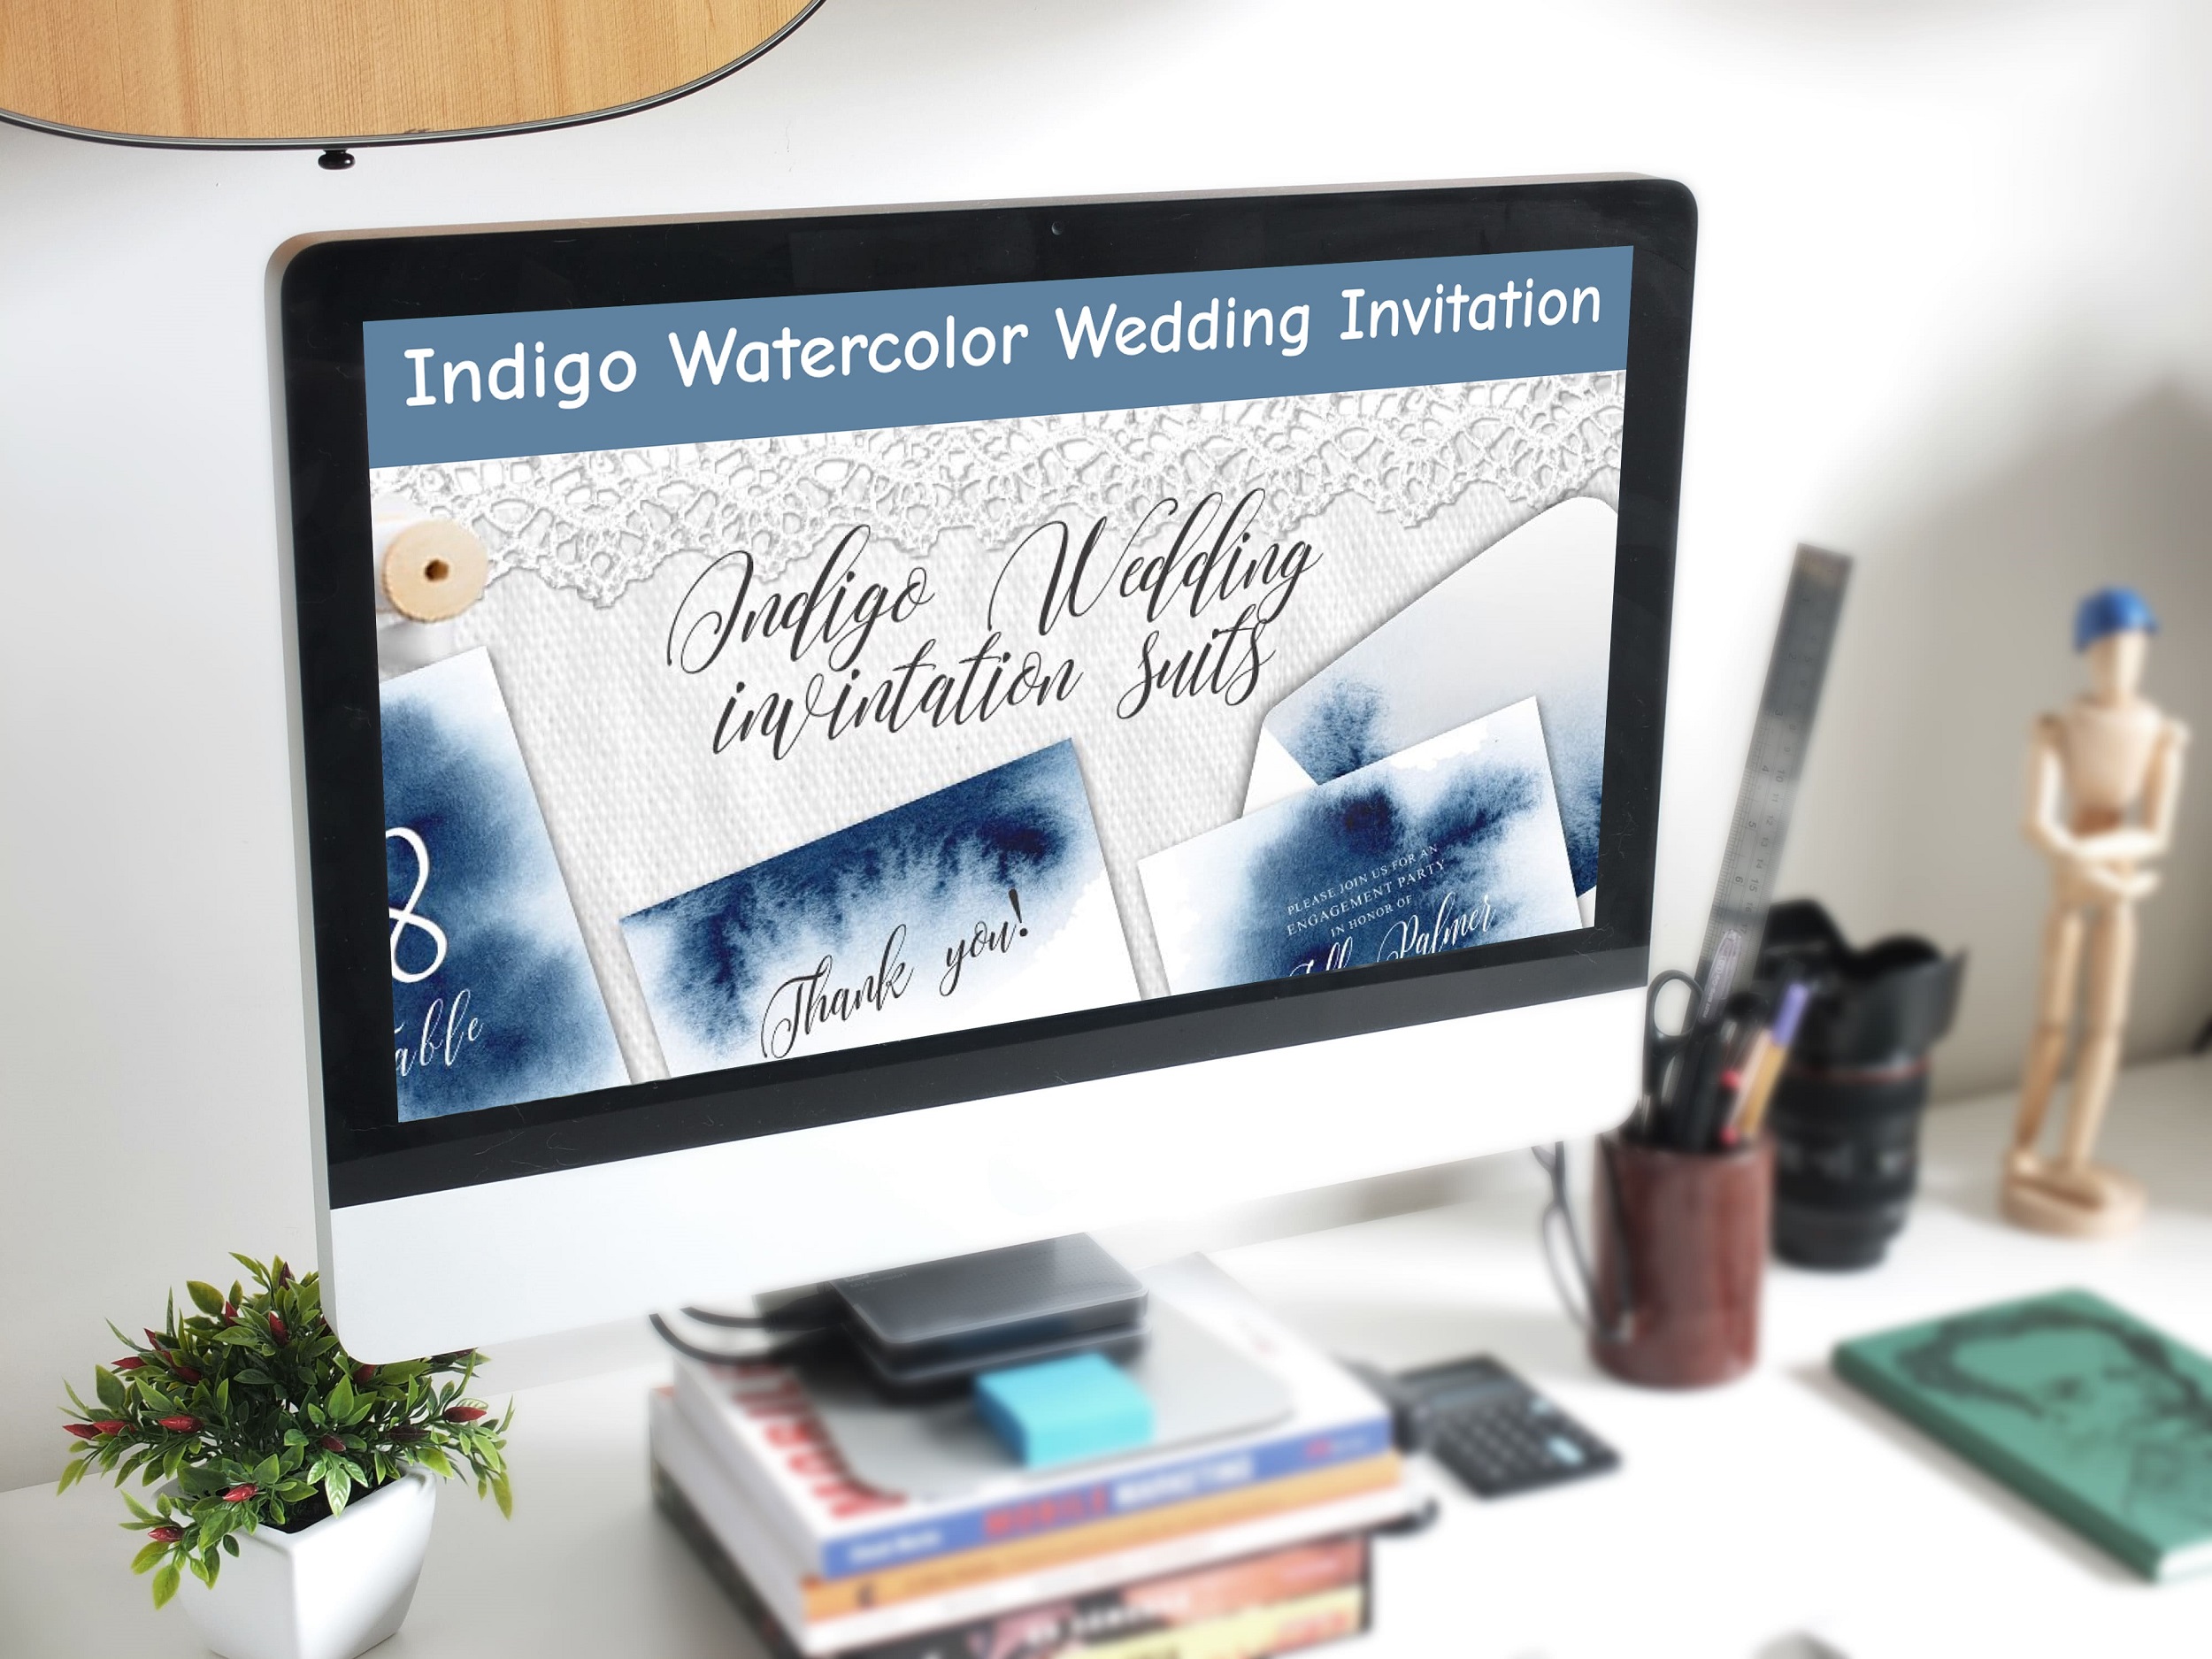 Indigo Watercolor Wedding Invitation desktop mockup.